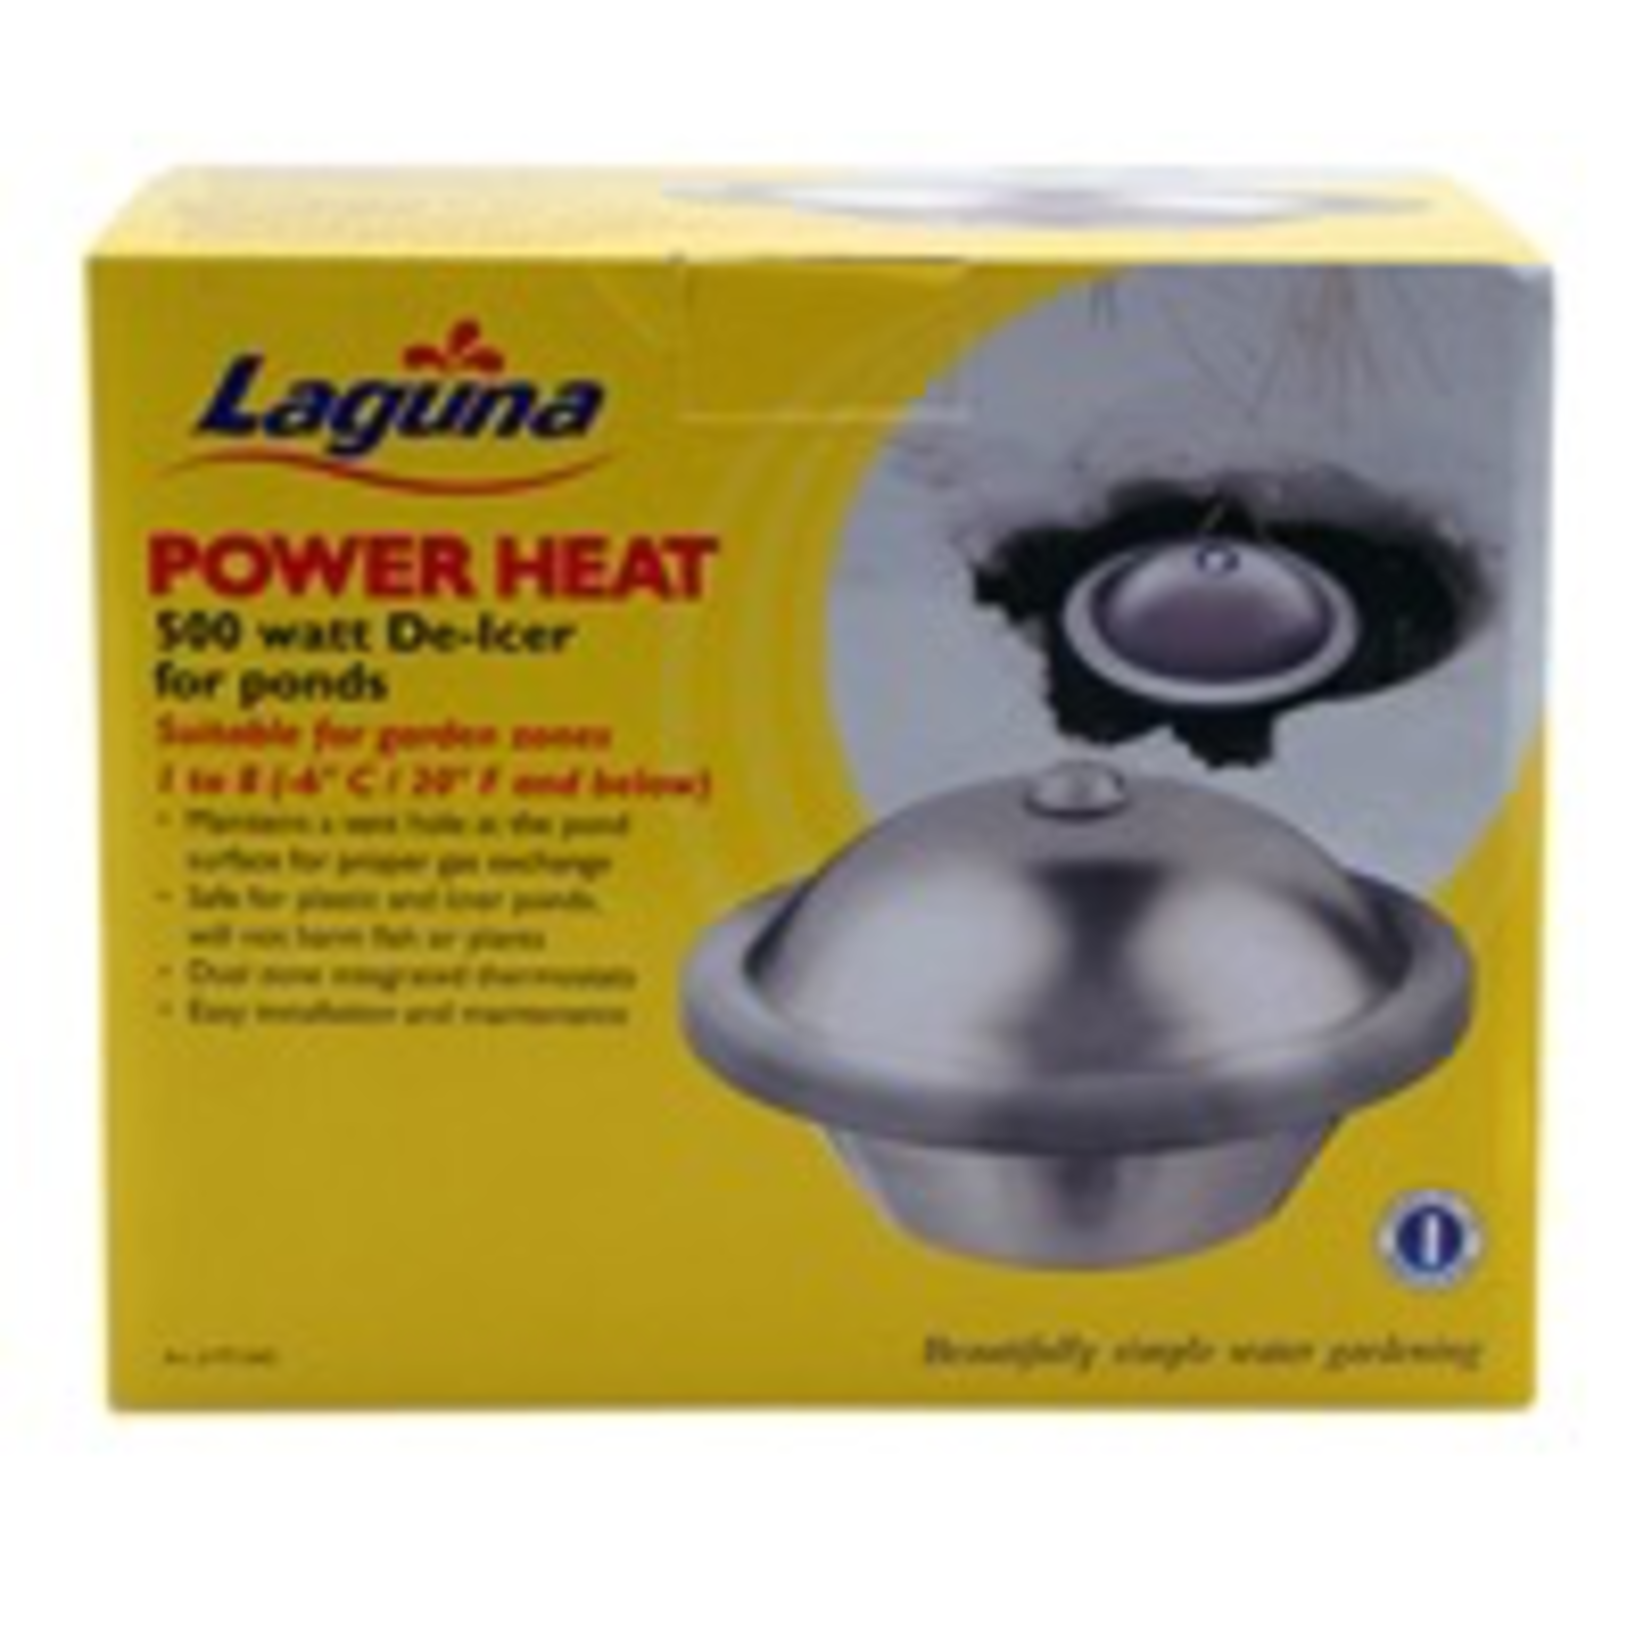 LAGUNA (W) Laguna Power Heat De-Icer - 500 watt